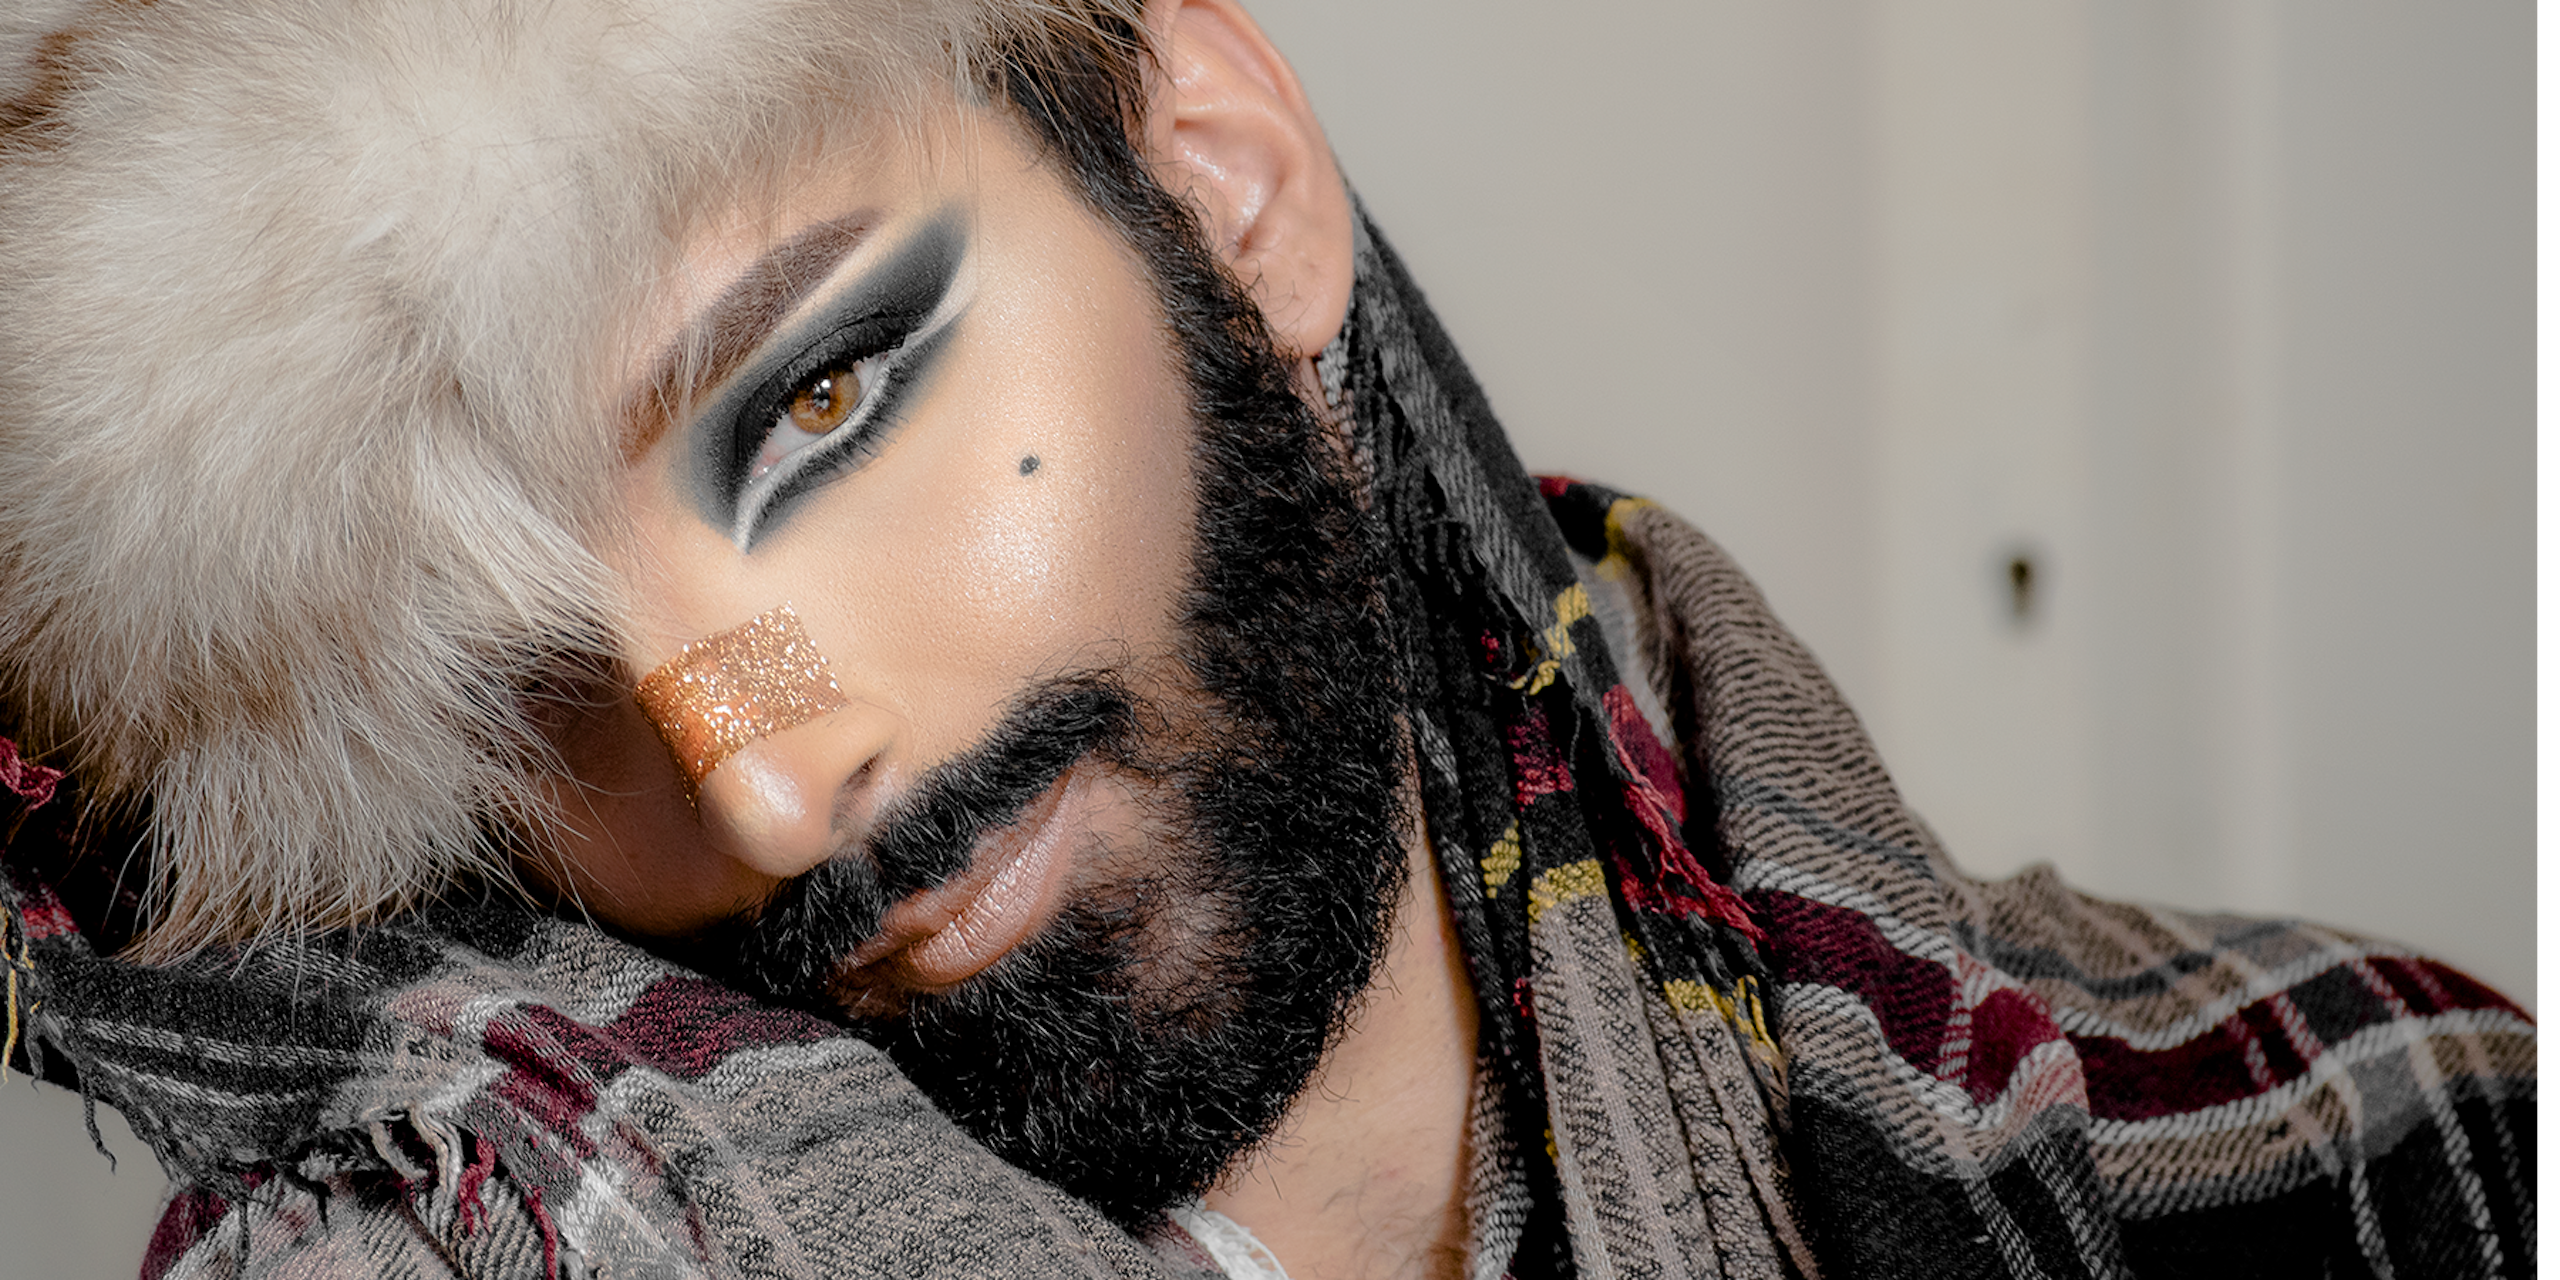 Autoportrait de l'artiste militante LGBT+, féministe et artiste tunisienne Khookha McQueer. 2018